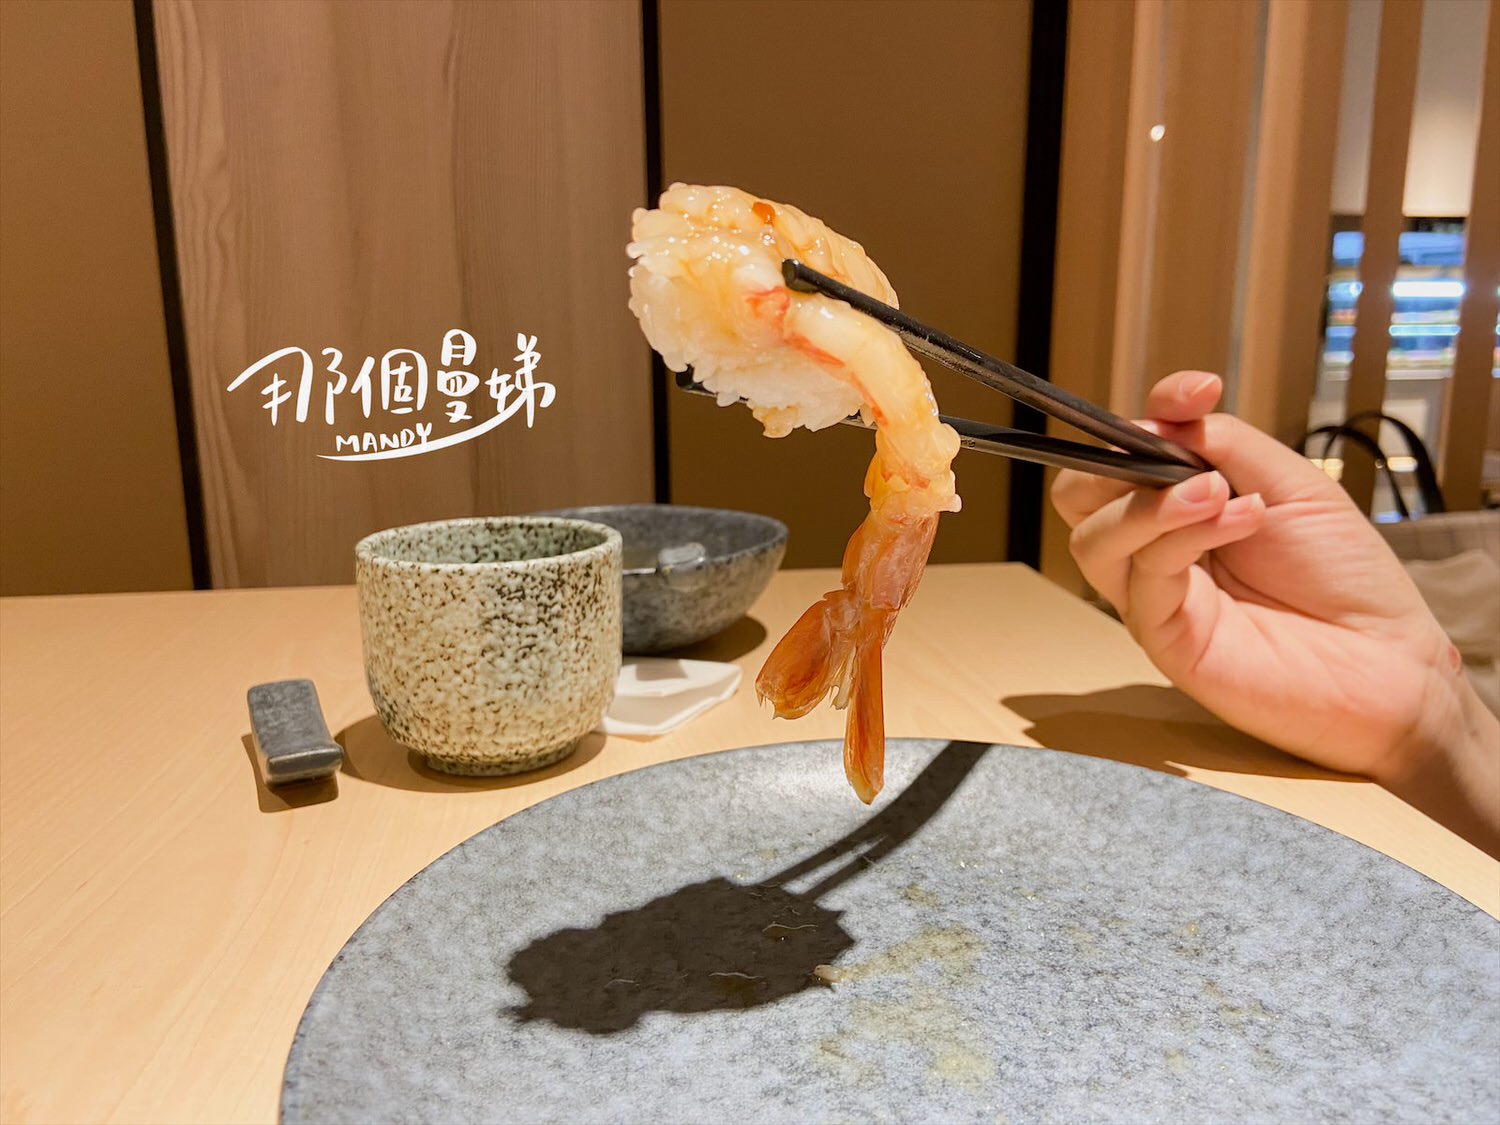 中永和火鍋湛胭脂蝦壽司